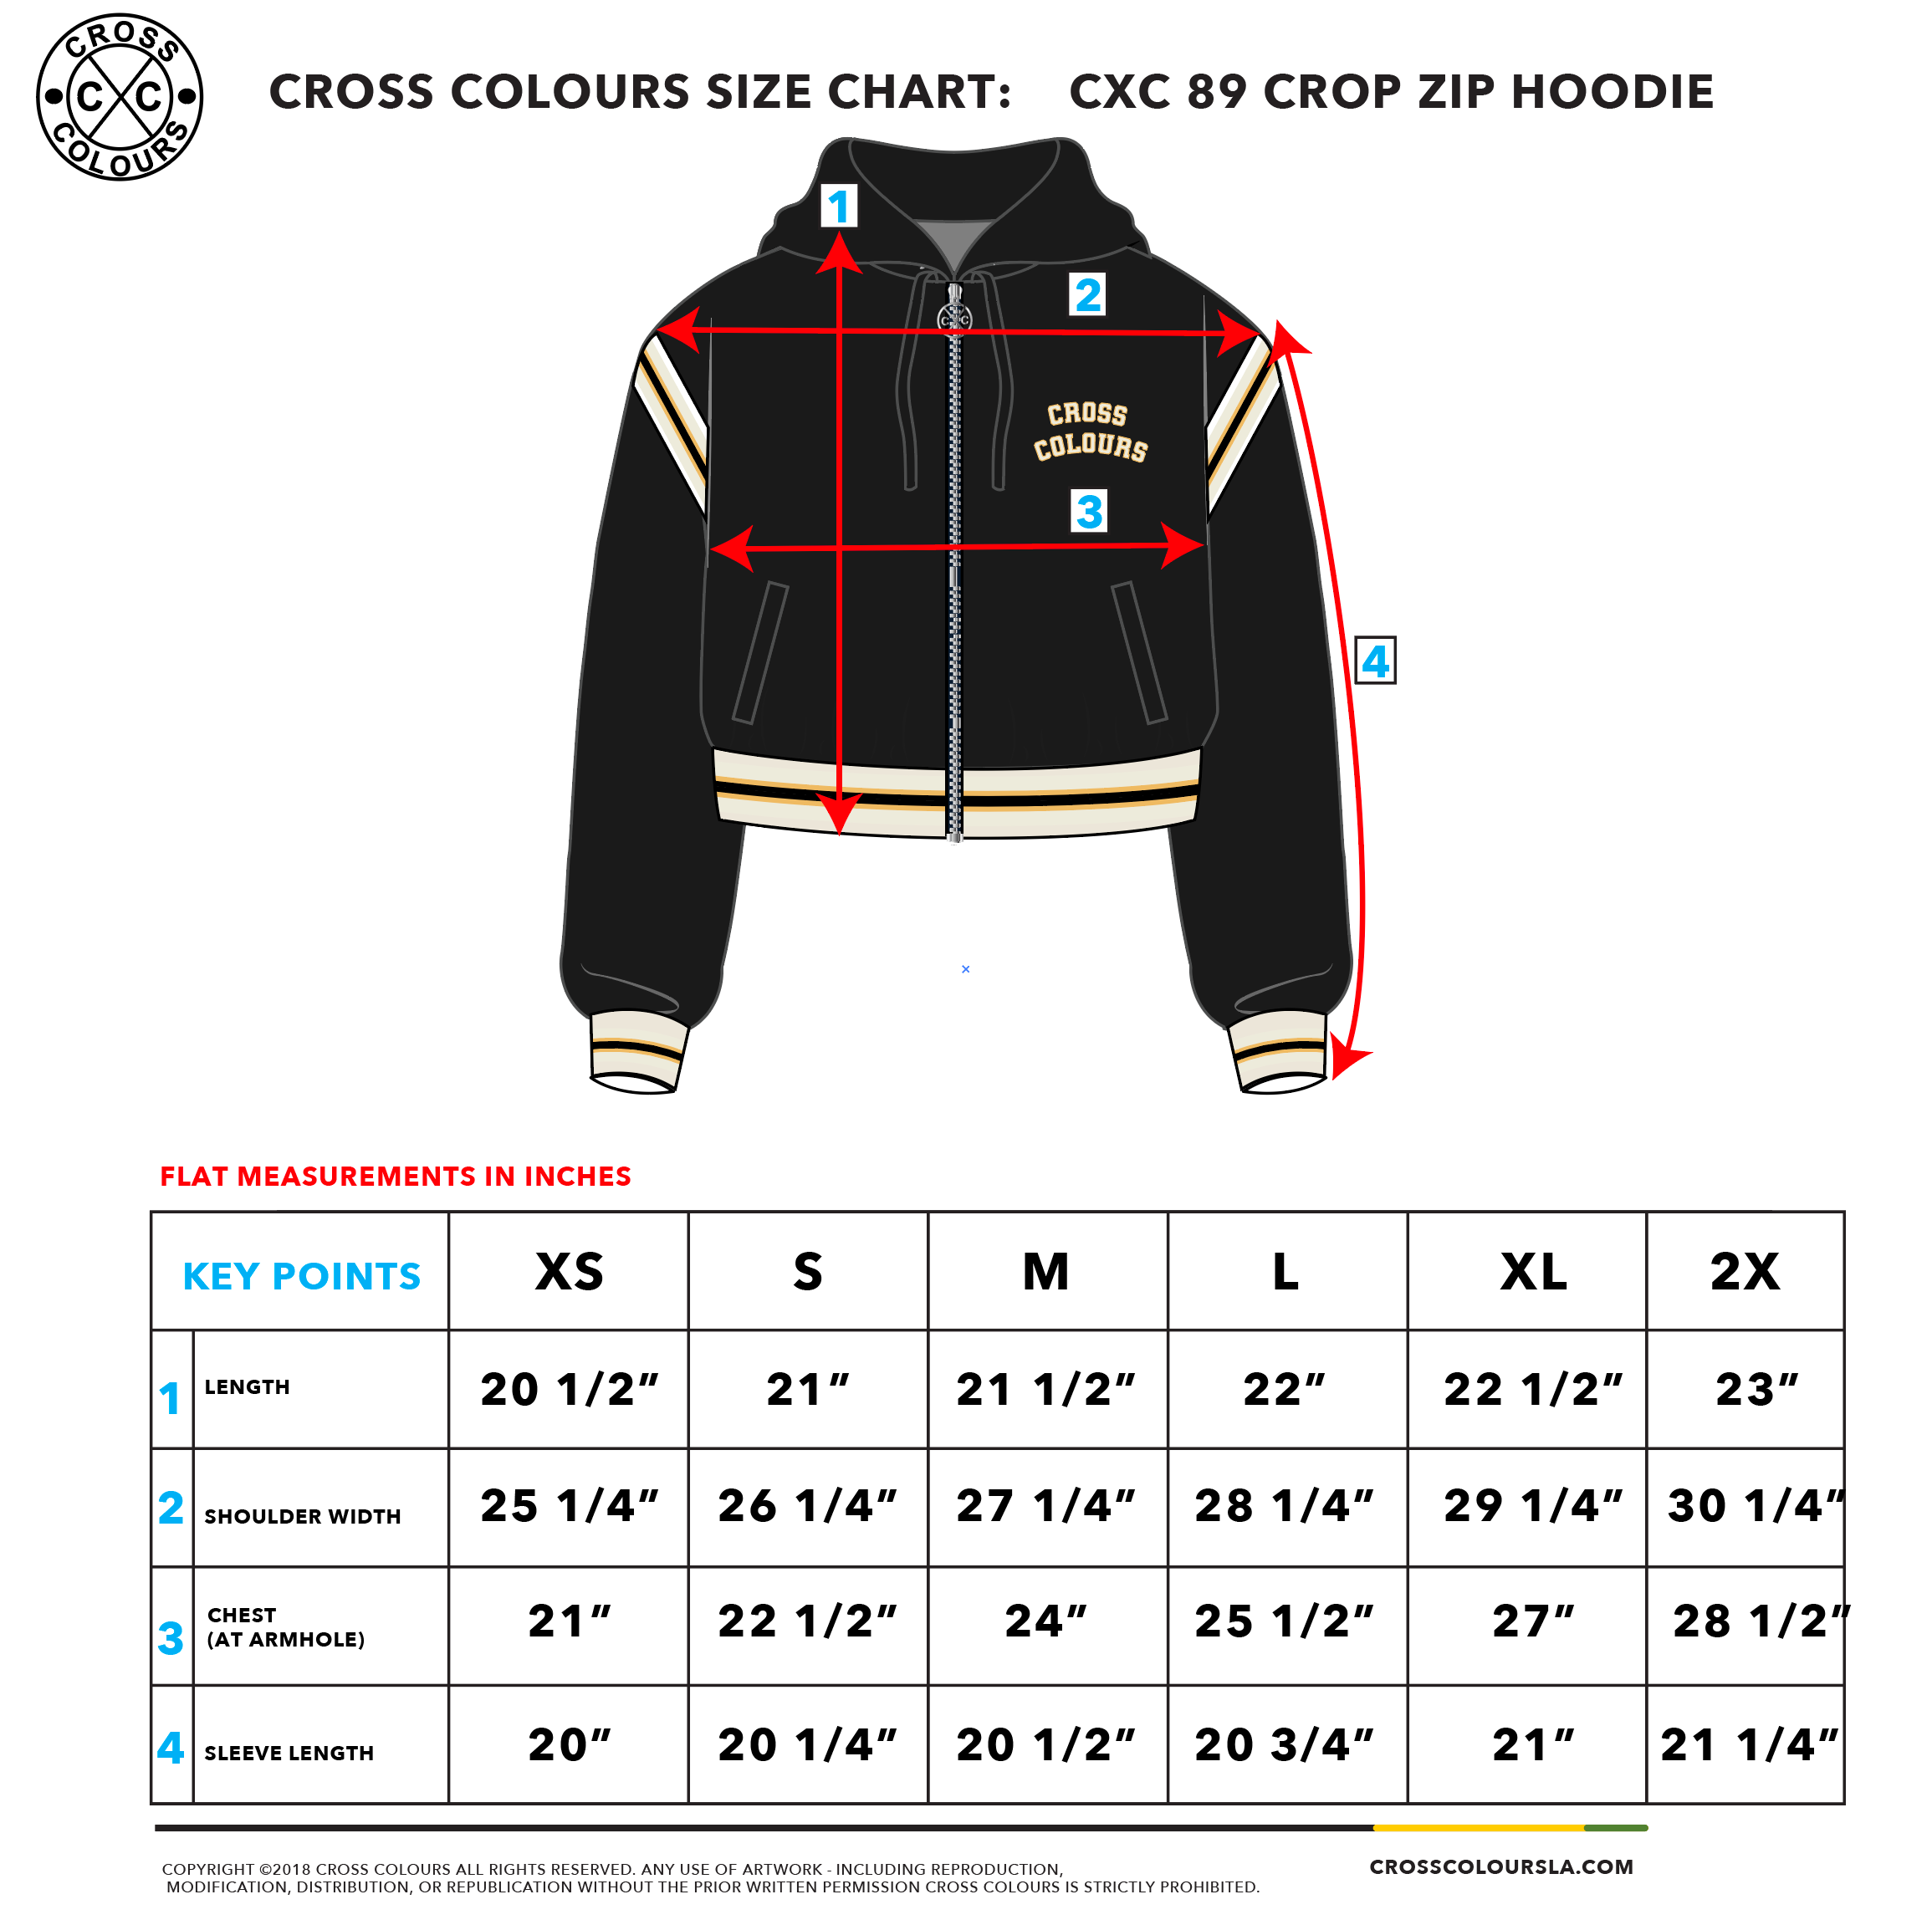 Cross Colours 89 Black Crop Zip Hoodie - Black